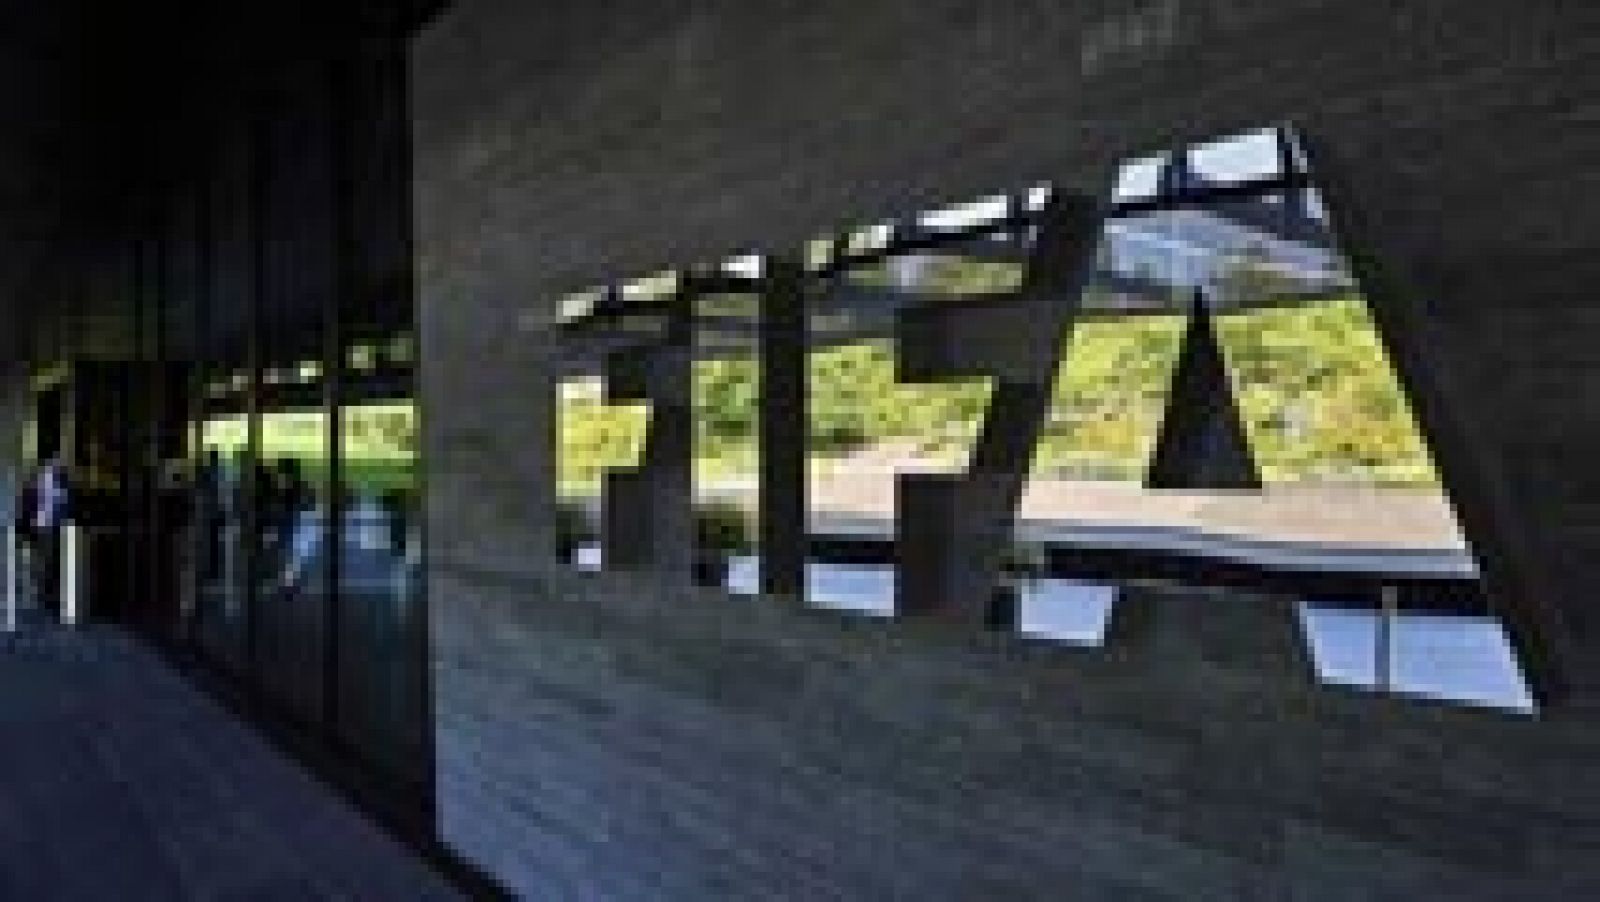 Uno de los siete responsables de la FIFA que se encontraban detenidos en Suiza desde el pasado 27 de marzo ha sido extraditado a Estados Unidos, informó hoy la Oficina Federal de Justicia.